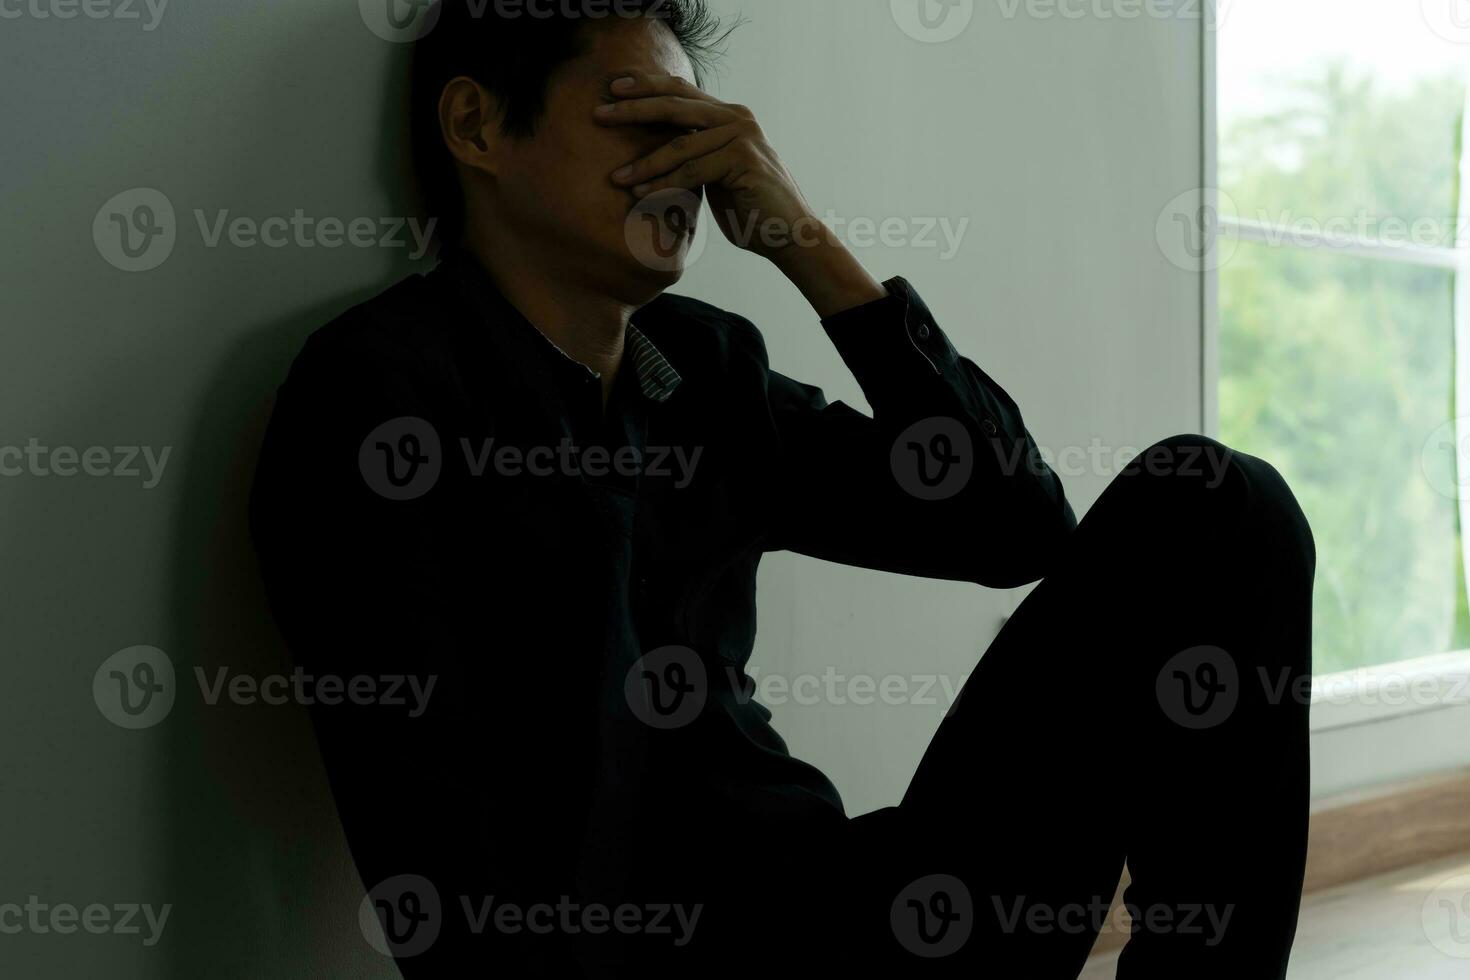 dépression et maladie mentale. un homme asiatique déçoit, triste après avoir reçu de mauvaises nouvelles. garçon stressé confus avec un problème malheureux, se disputant avec sa petite amie, pleurant et s'inquiétant d'un travail inattendu, d'une économie en baisse. photo